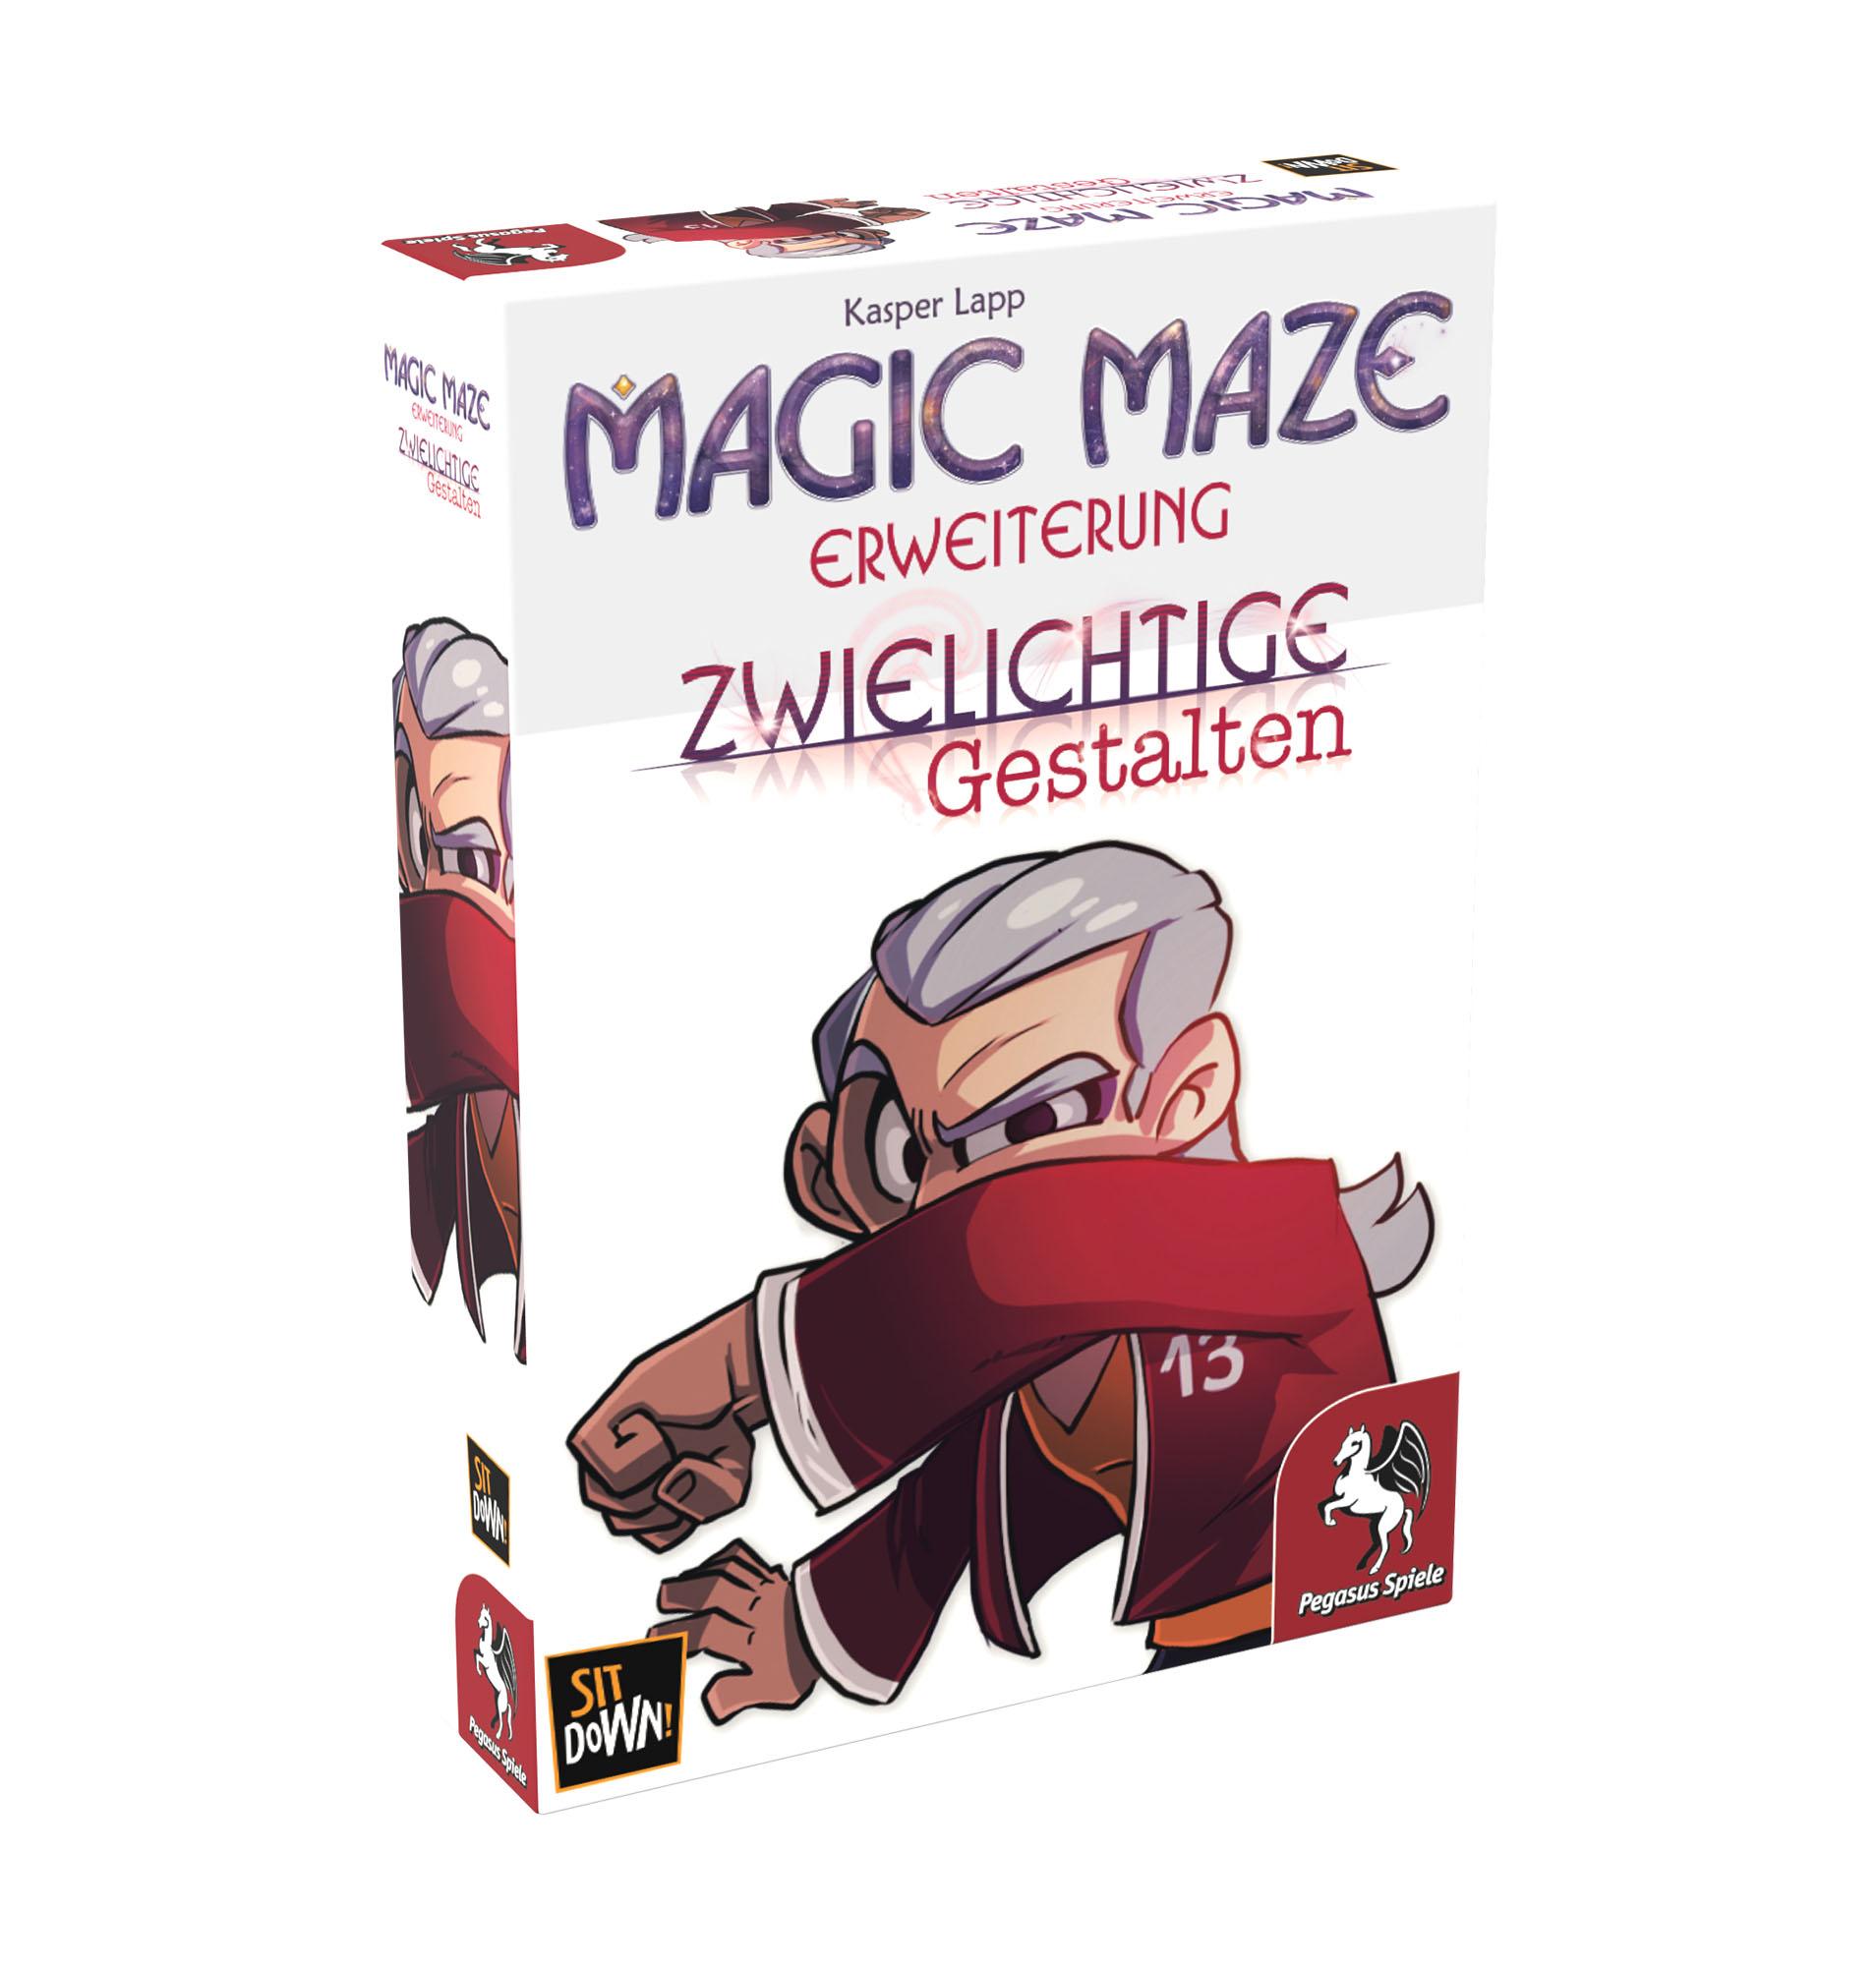 Magic Maze - Erweiterung: Zwielichtige Gestalten